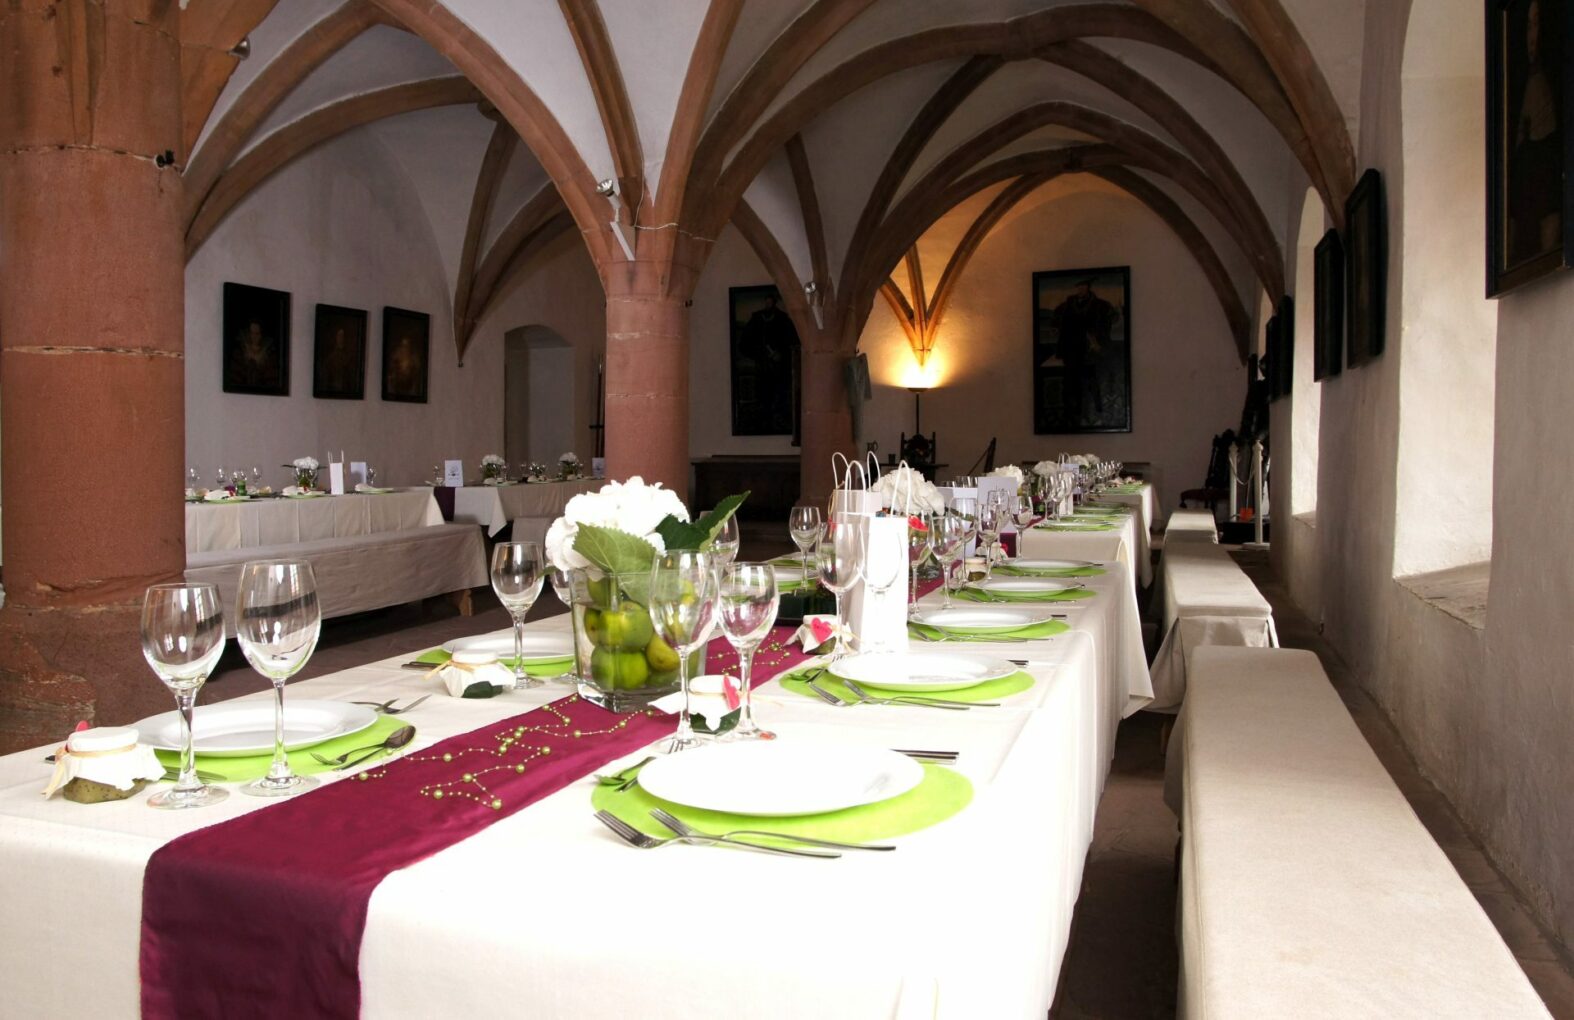 Steinau Palace as festive venue